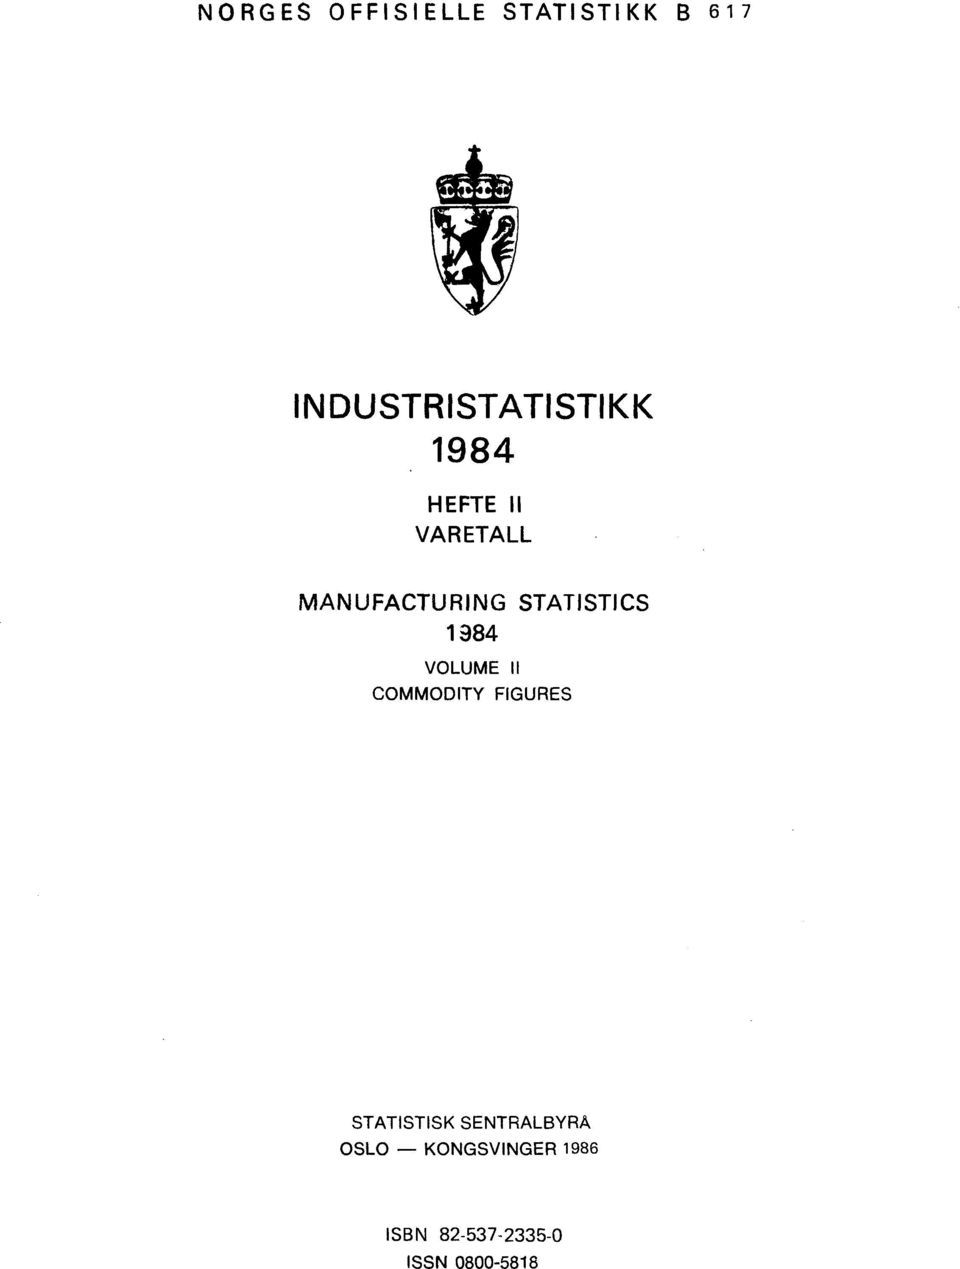 VOLUME II COMMODITY FIGURES STATISTISK SENTRALBYRÅ